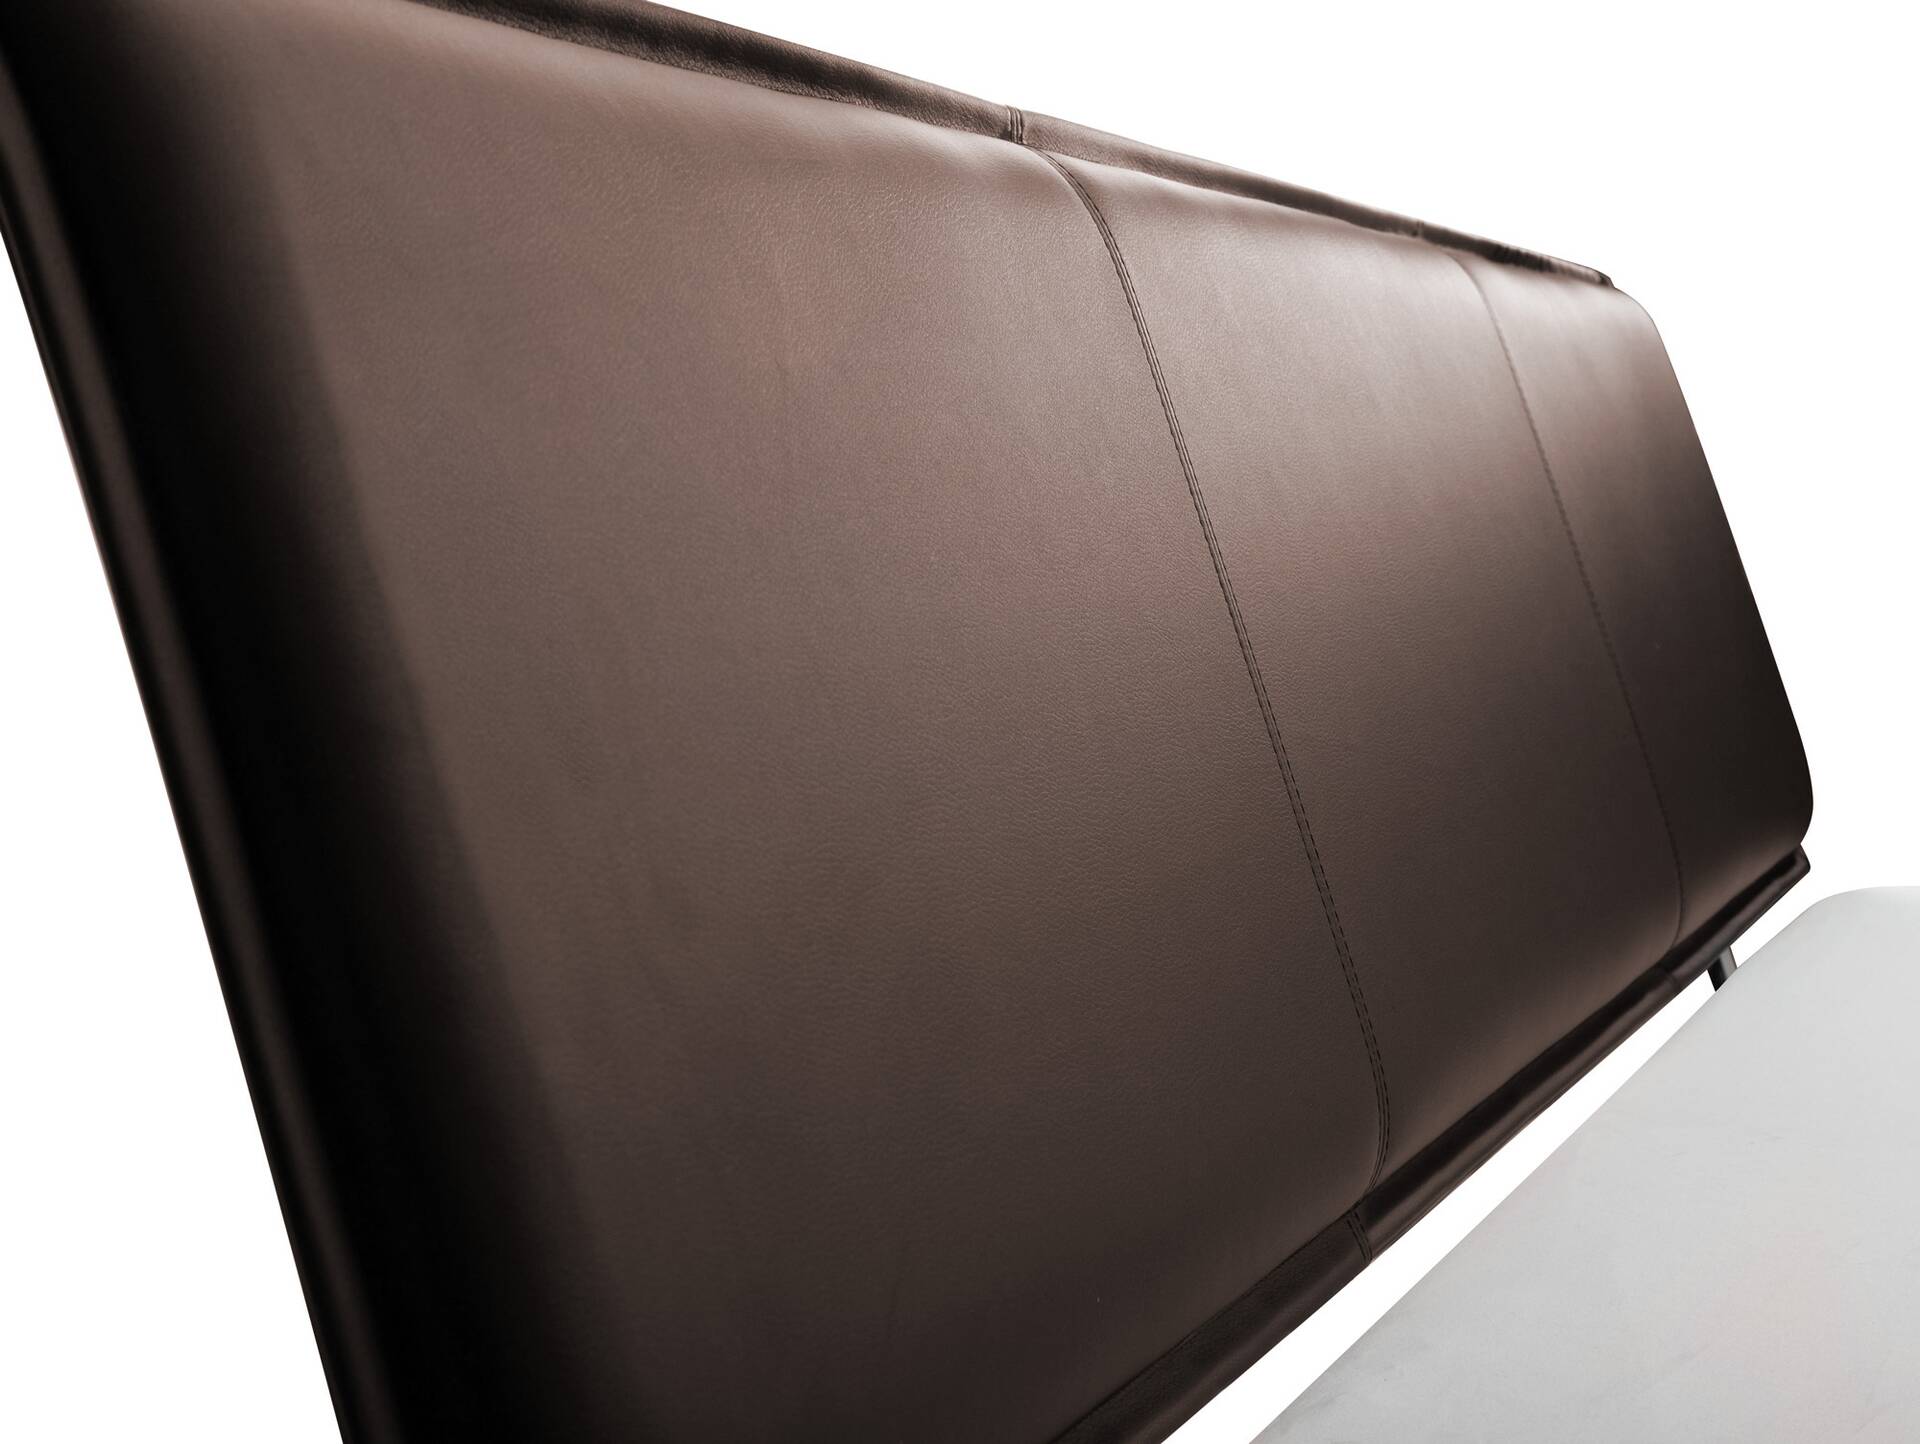 LUKY Bett Metallfuß, mit Polsterkopfteil, Material Massivholz, Fichte massiv 160 x 220 cm | weiss | Kunstleder Braun